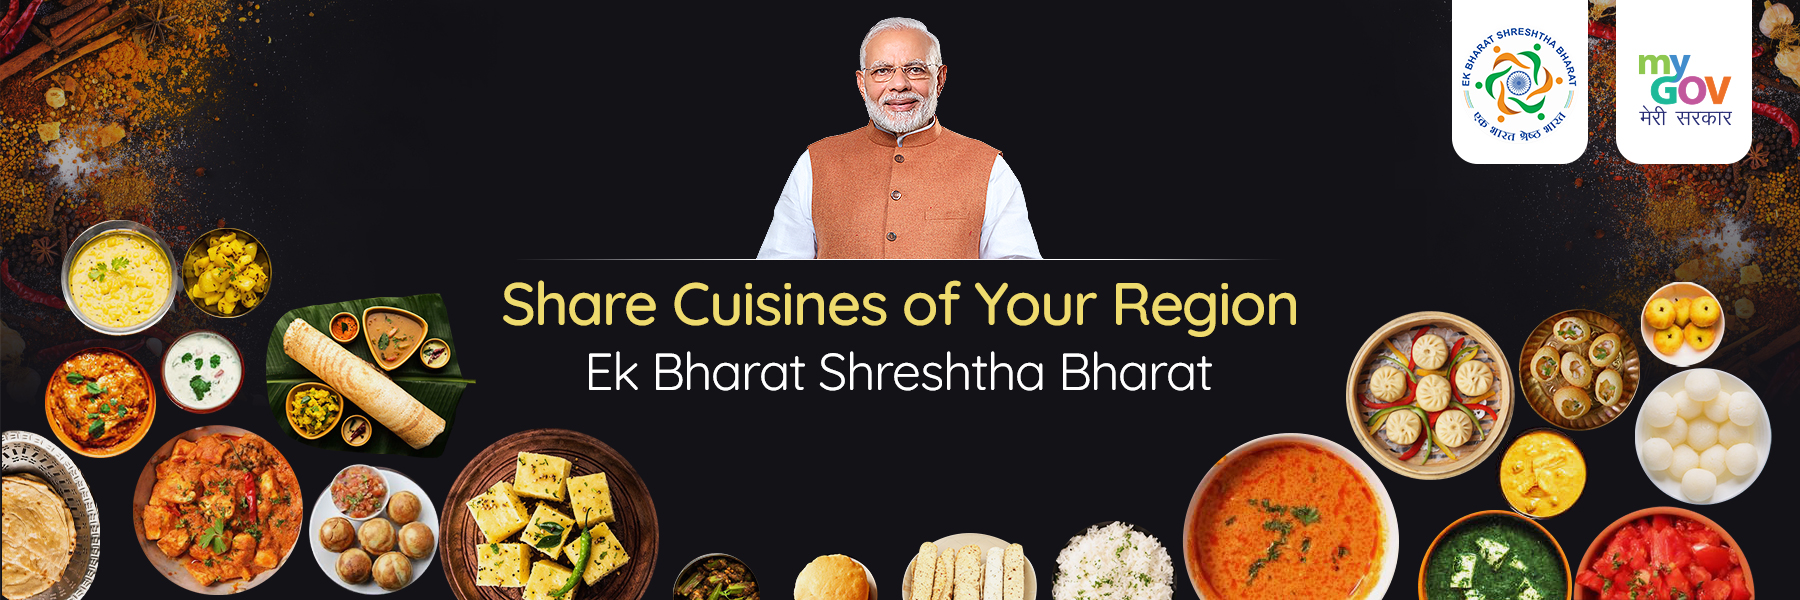 Share Cuisines of Your Region: Ek Bharat Shreshtha Bharat